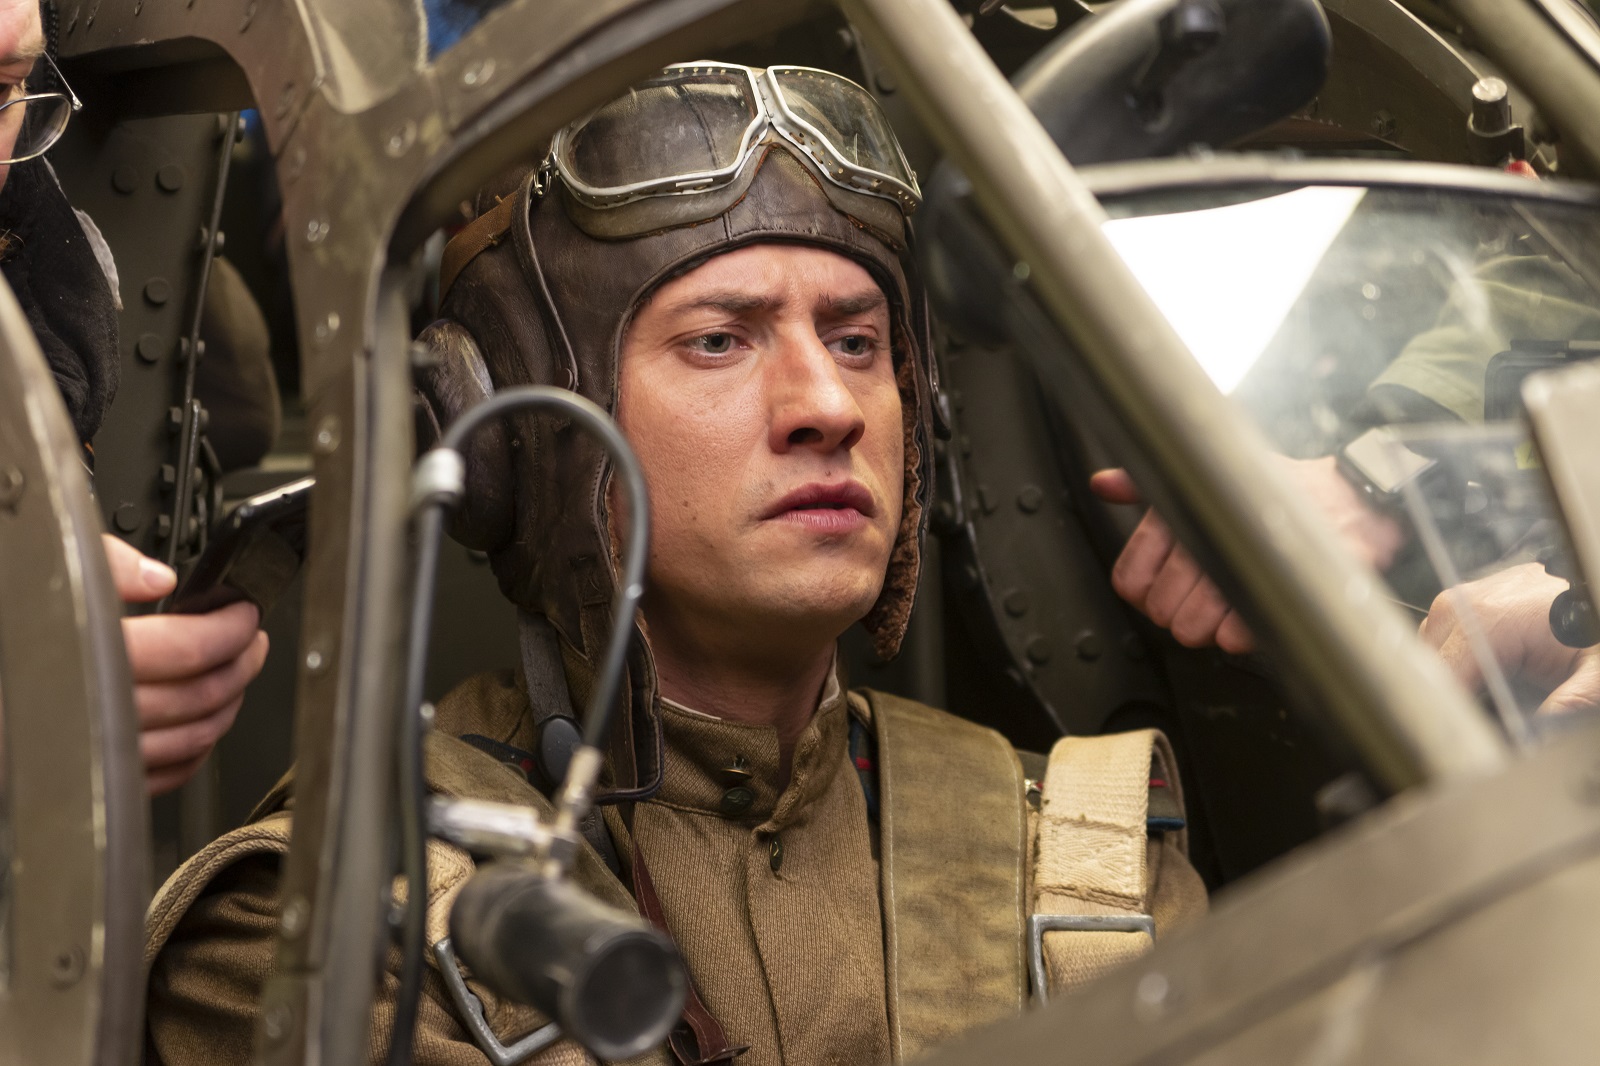 Военный экшн-фильм «Девятаев» выйдет в прокат 29 апреля